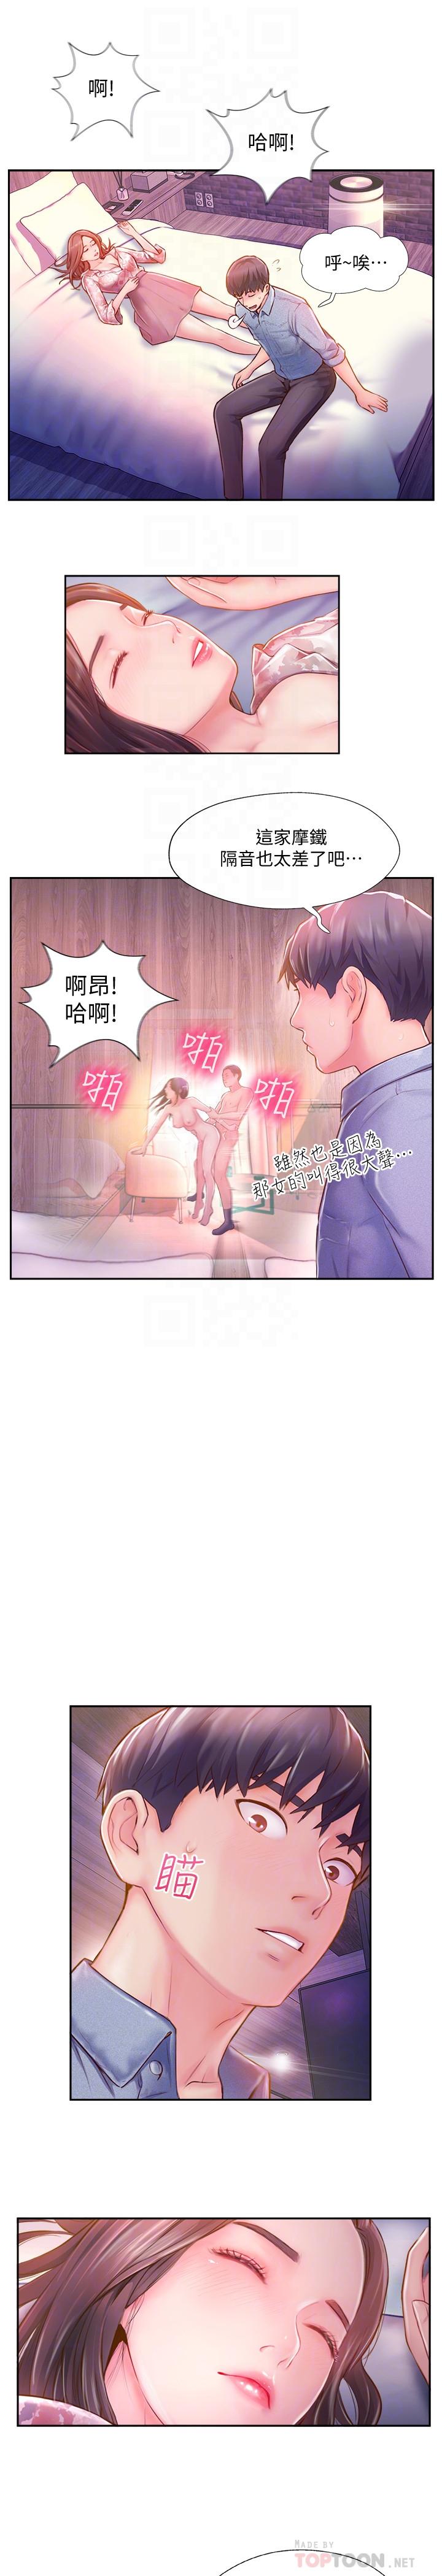 韩国污漫画 完美新伴侶 第3话-把身体交给陌生男人 6